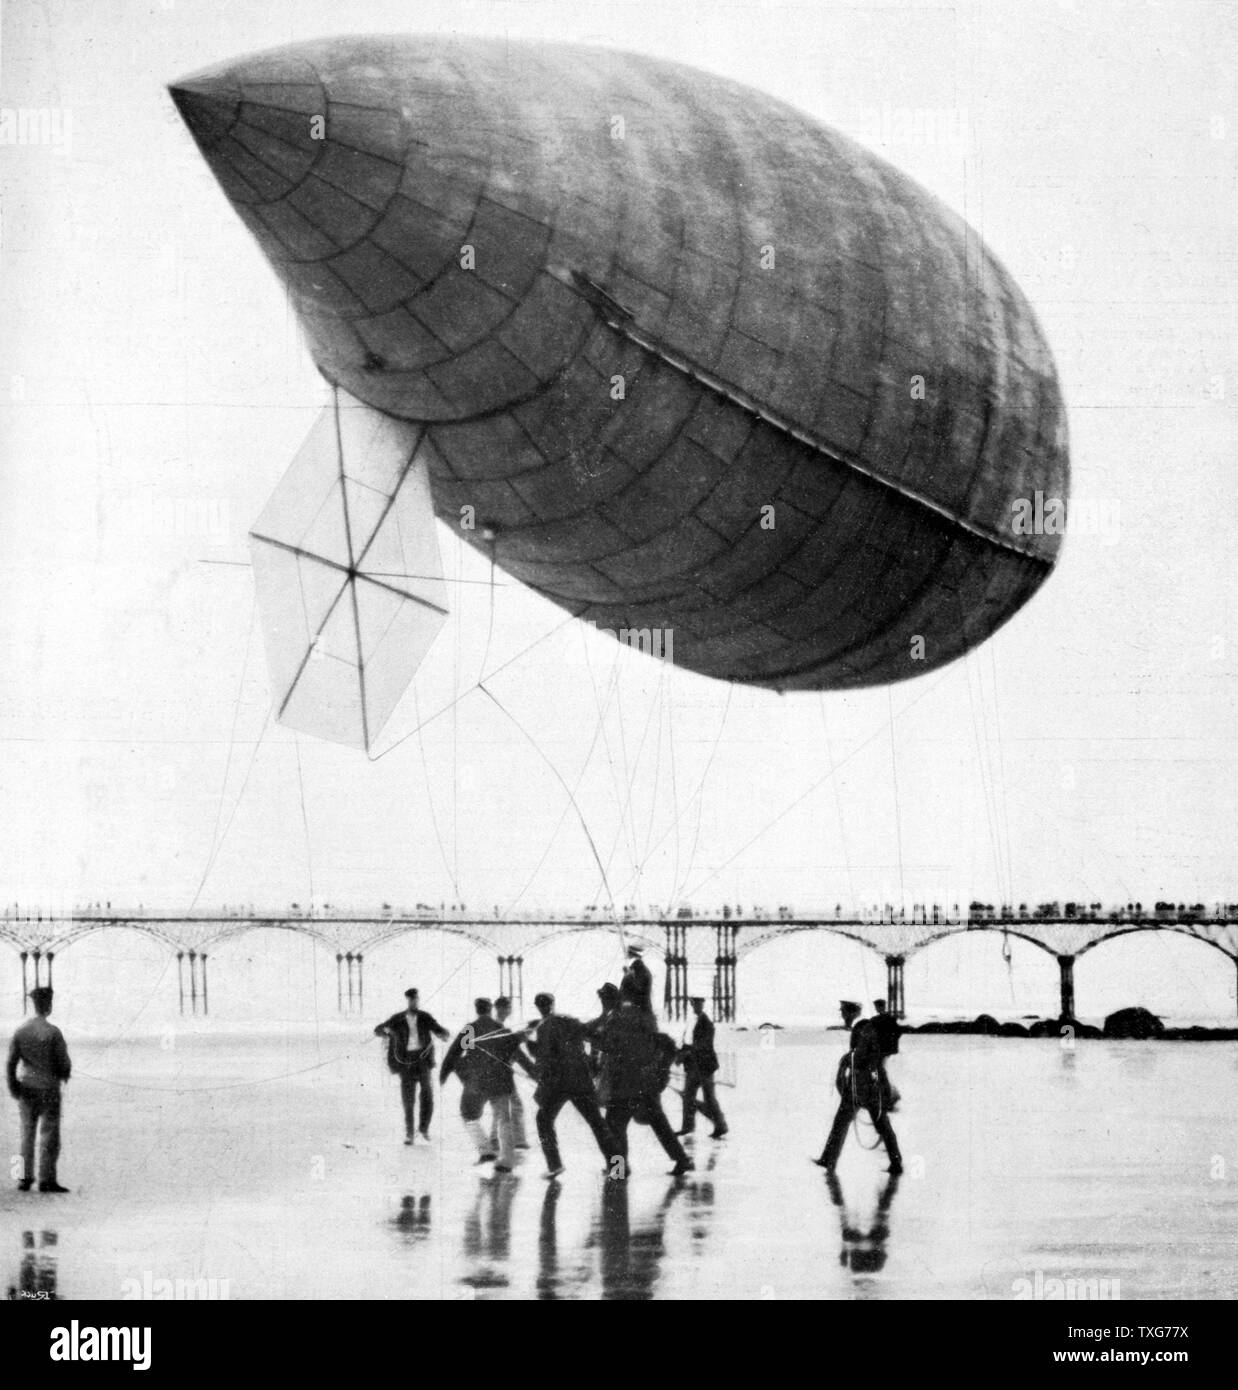 Alberto Santos-Dumont's airship n° 14 sur l'exploitation des sables bitumineux à Trouville, France de "La vie au Grand Air", Paris, 1 septembre 1905 Banque D'Images